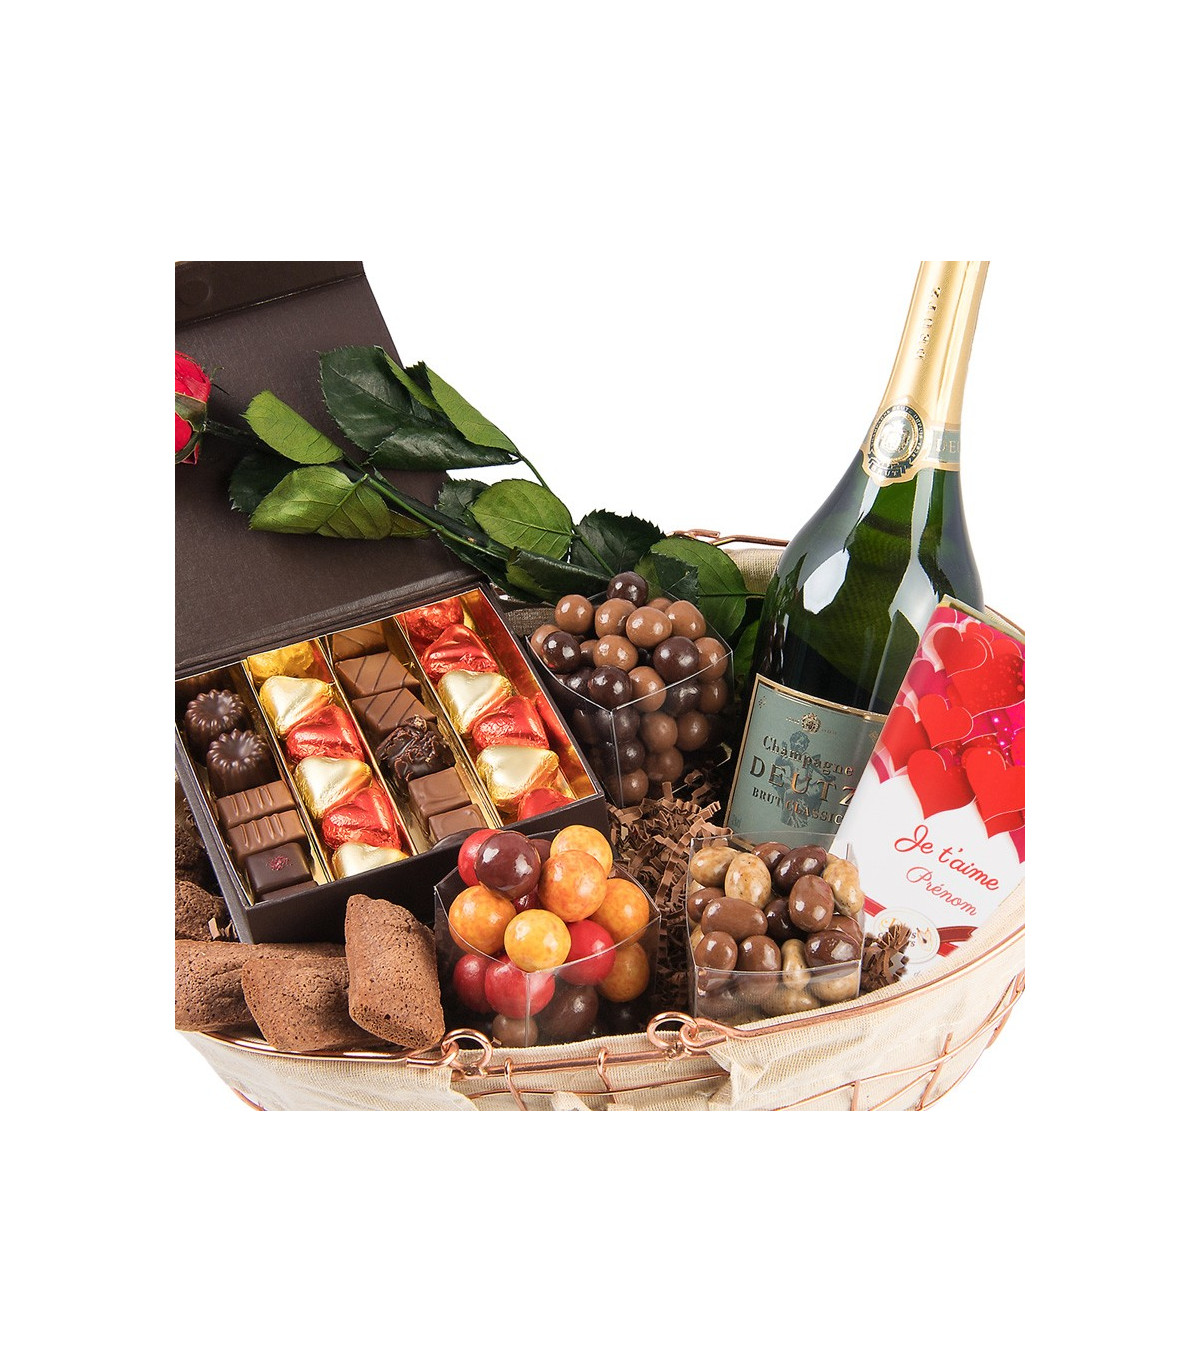 Coffret cadeau chocolats - Boutique de chocolat D'lys couleurs